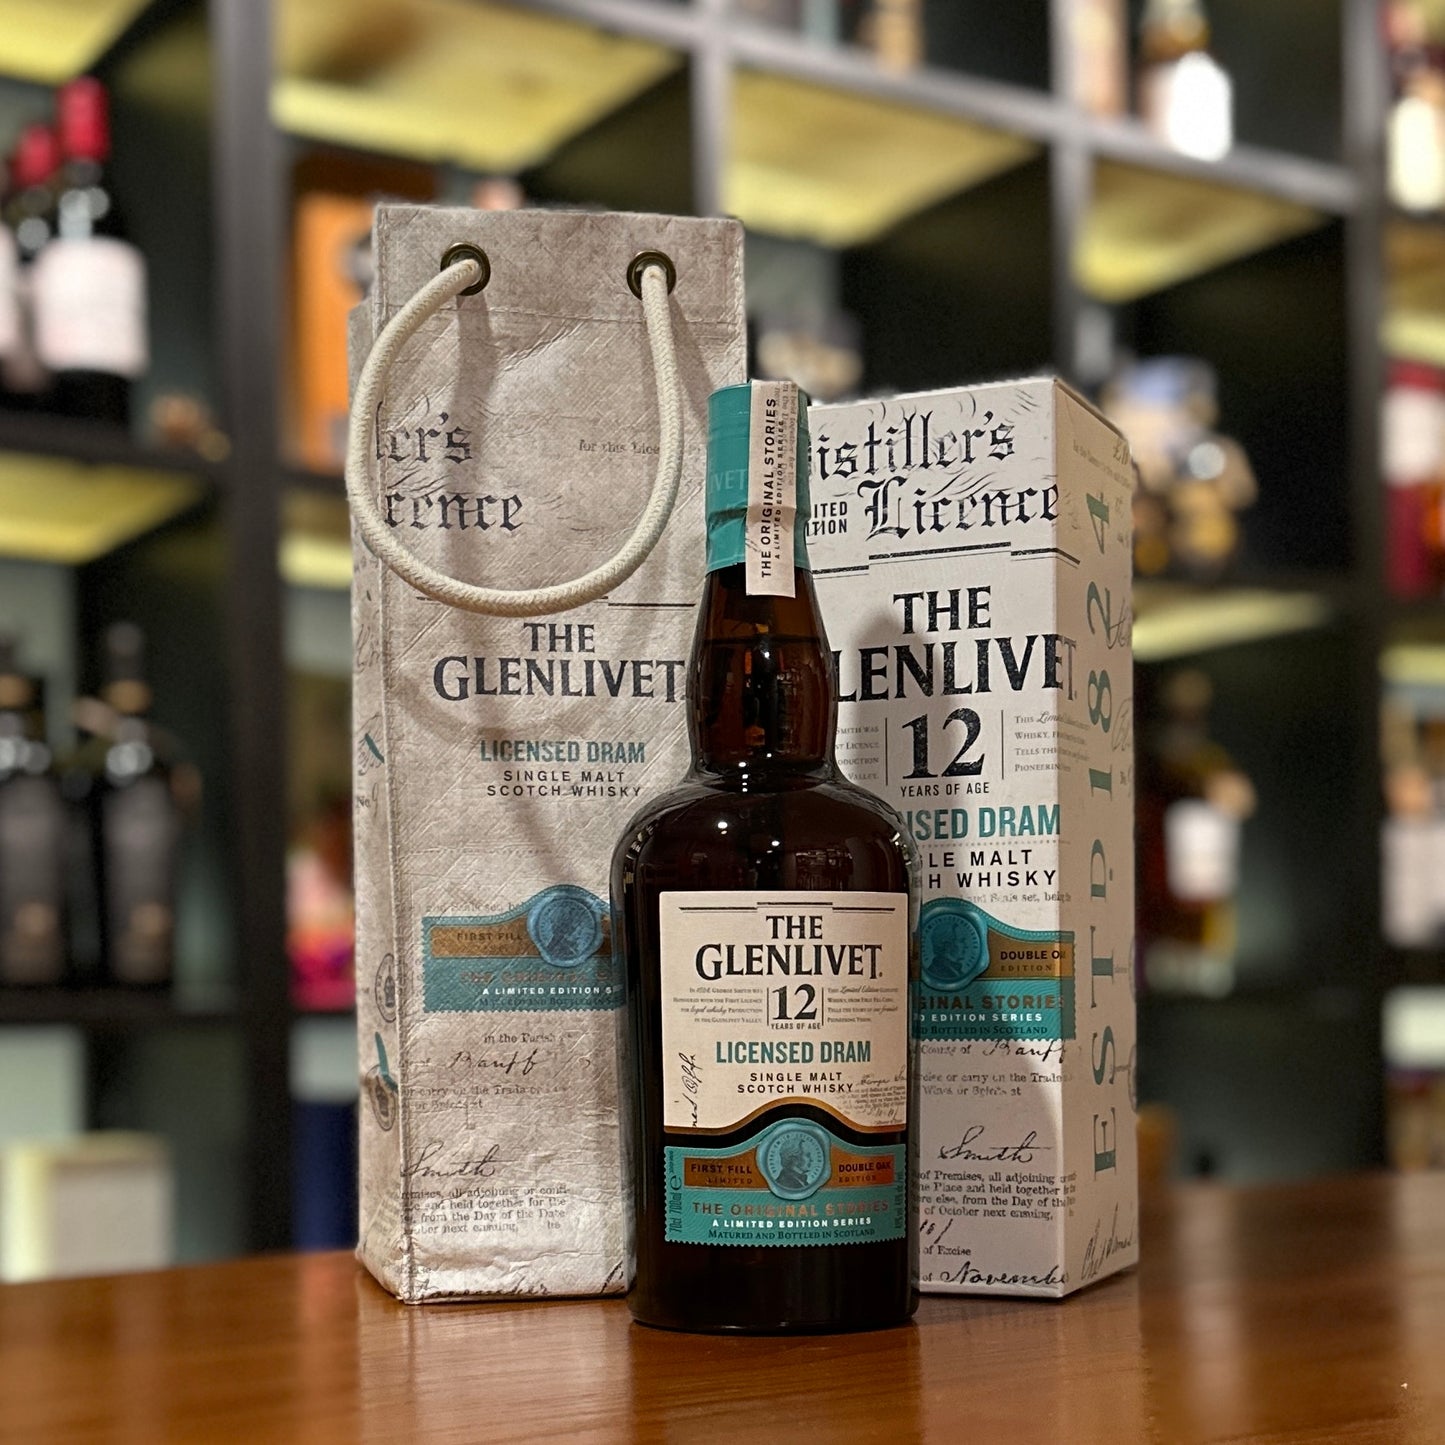 Glenlivet 12 Year Old “Licensed Dram” Single Malt Scotch Whisky